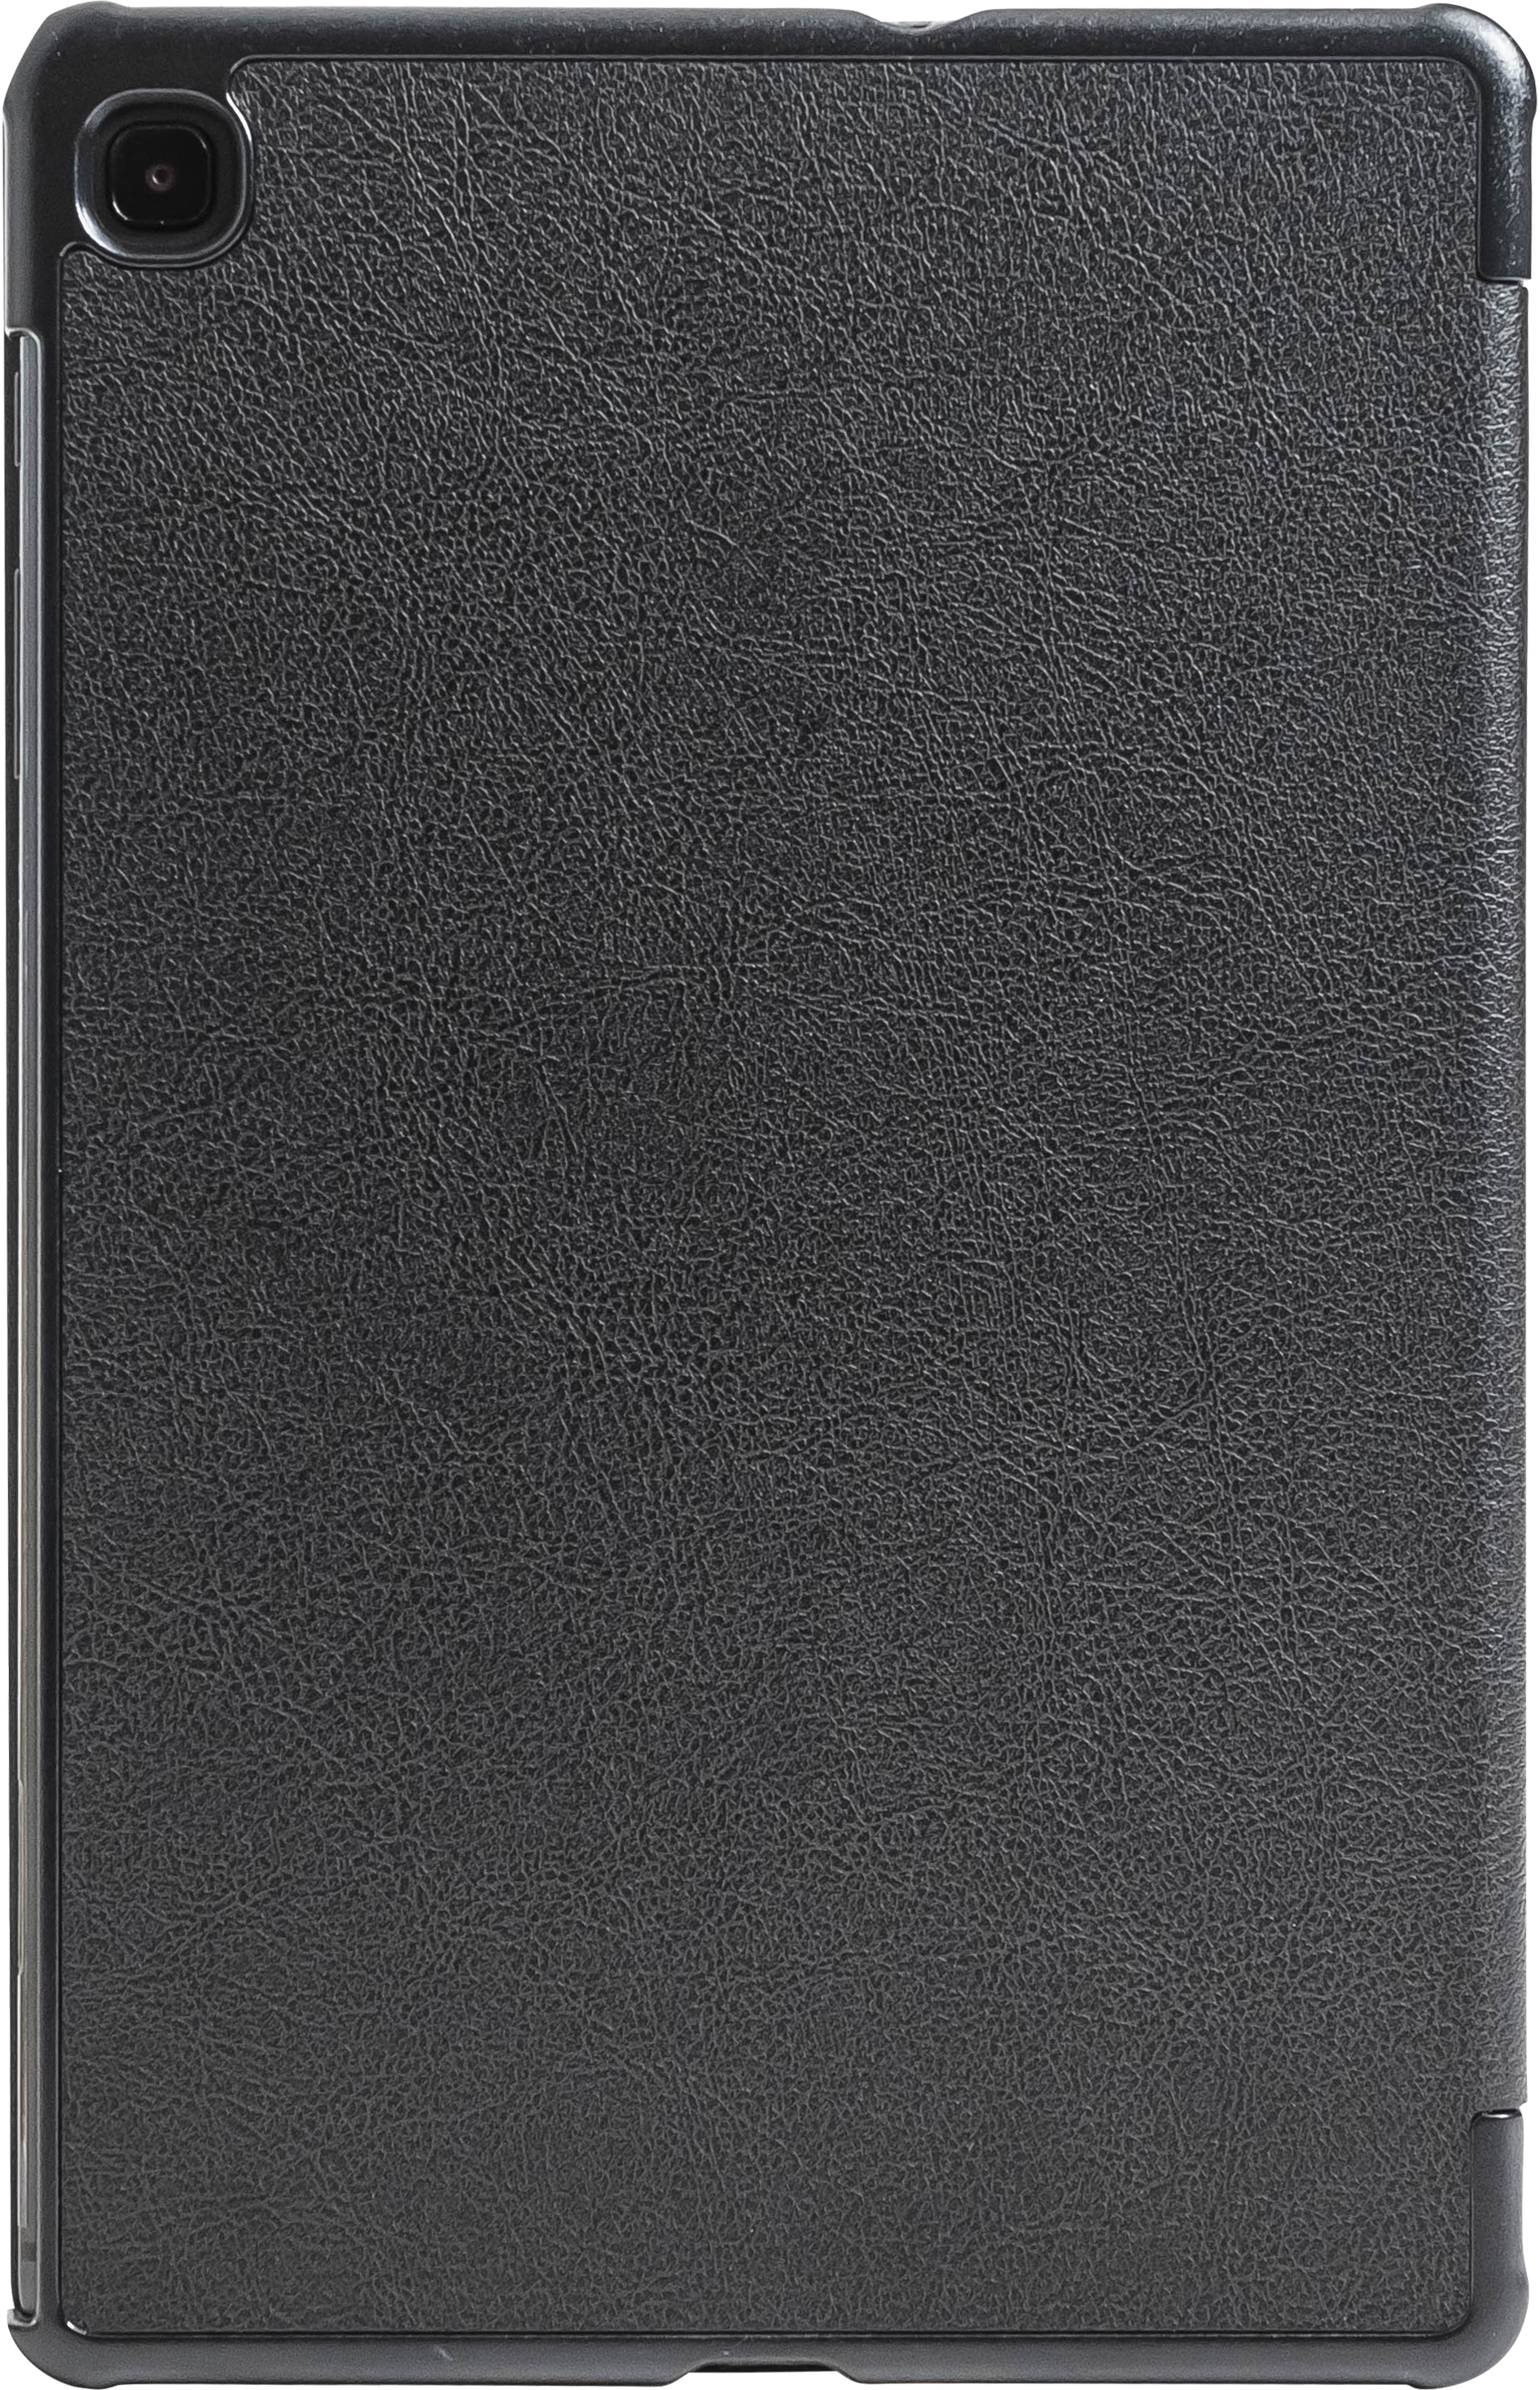 192 Lederschutzhülle für Samsung Galaxy Tab S6 Lite, 10,4" geschlossene Rückansicht